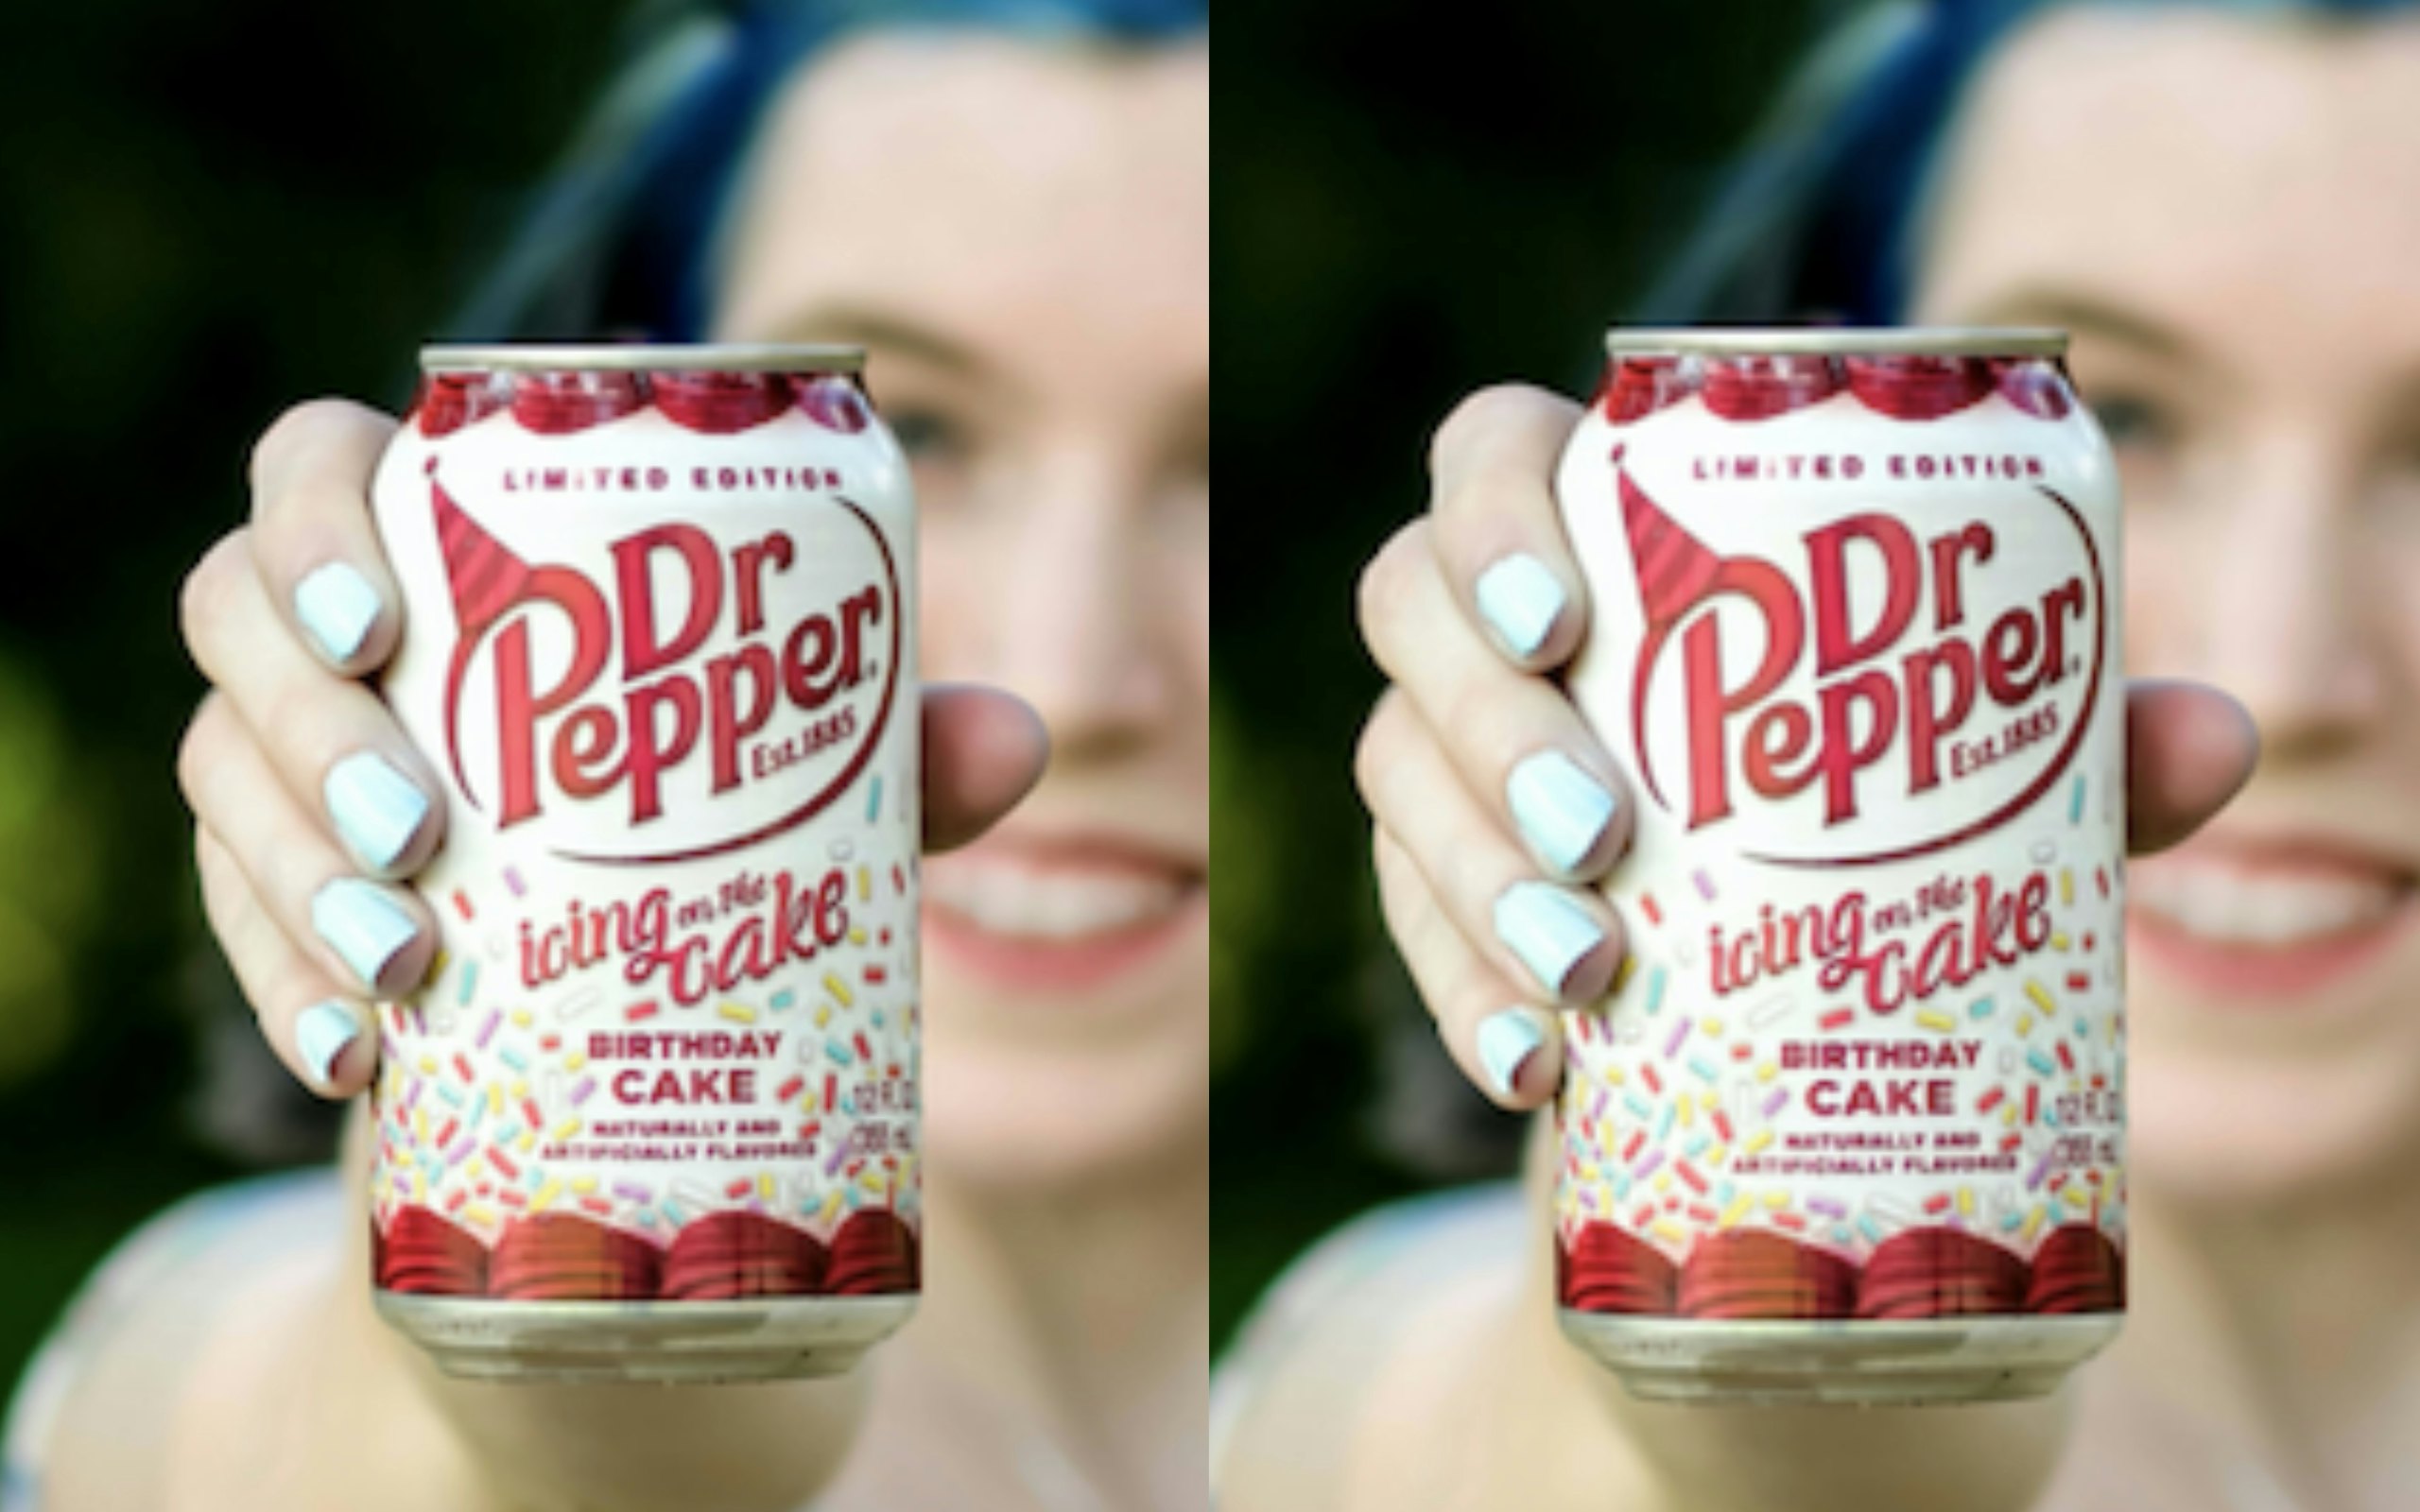 Dr Pepper themed cake - strawberry cake inside 😋🧁 #superhumanbakes #... |  TikTok